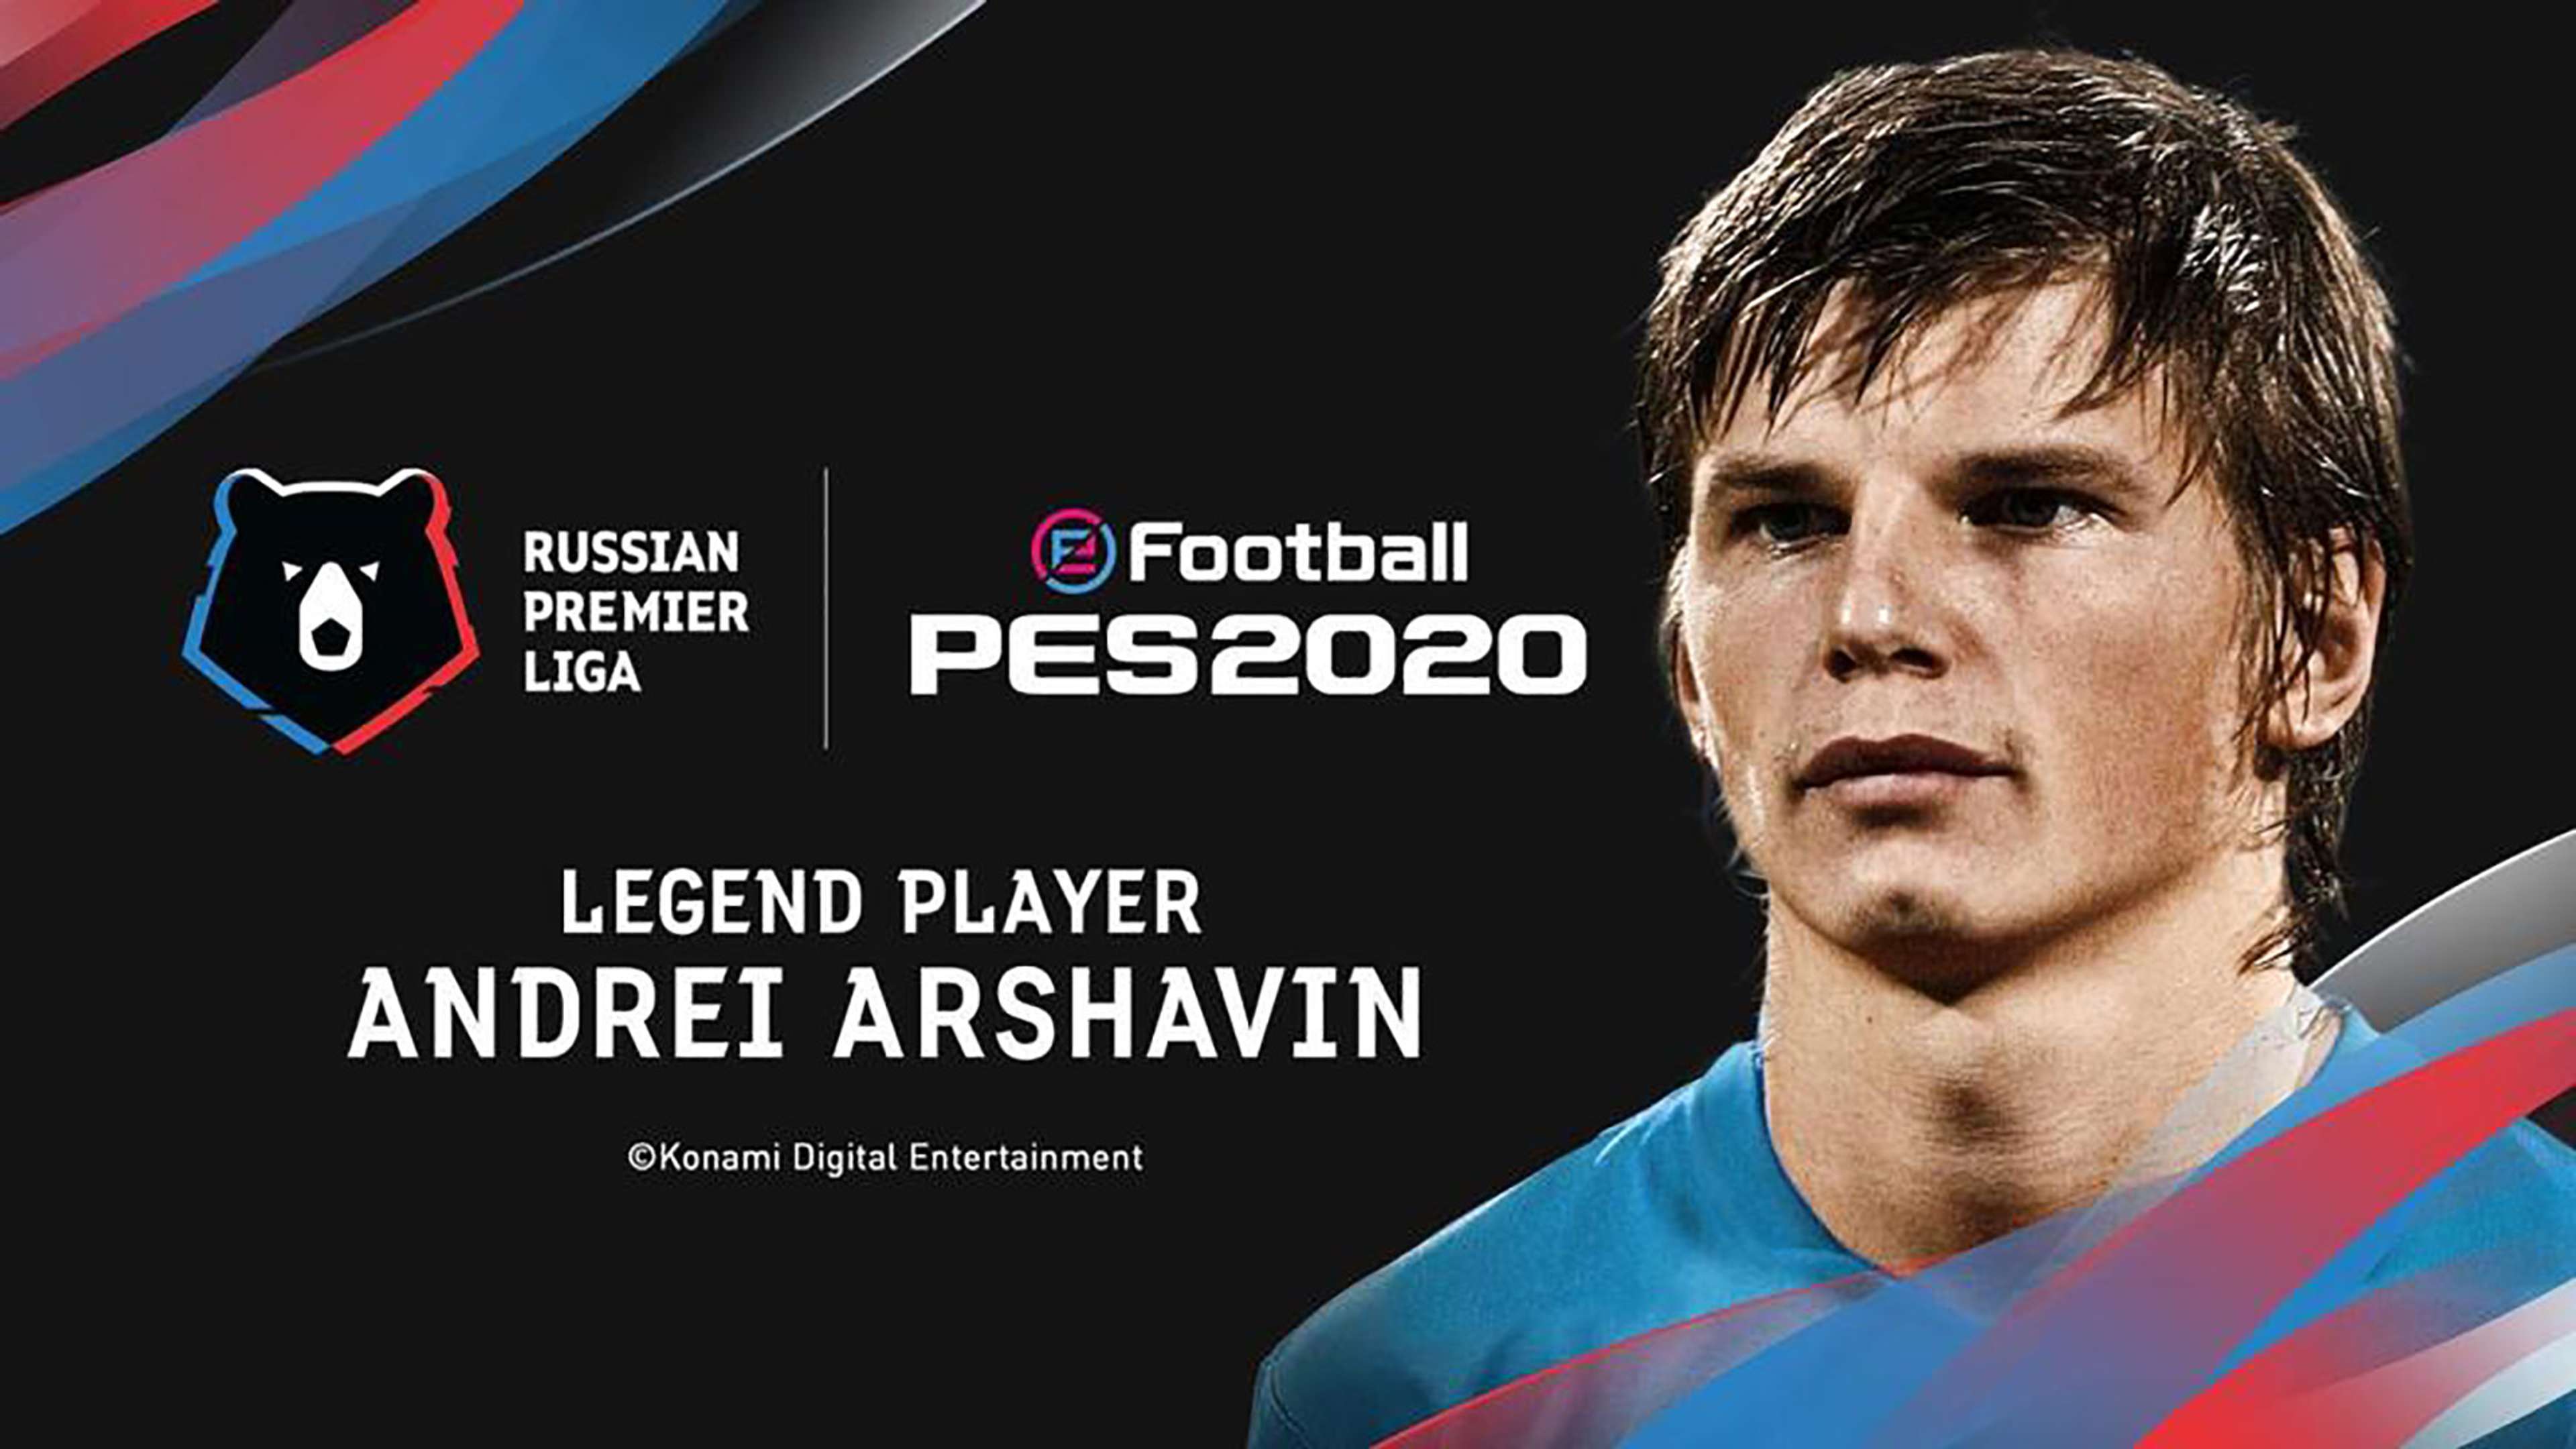 Andrei Arshavin PES 2020 Legend